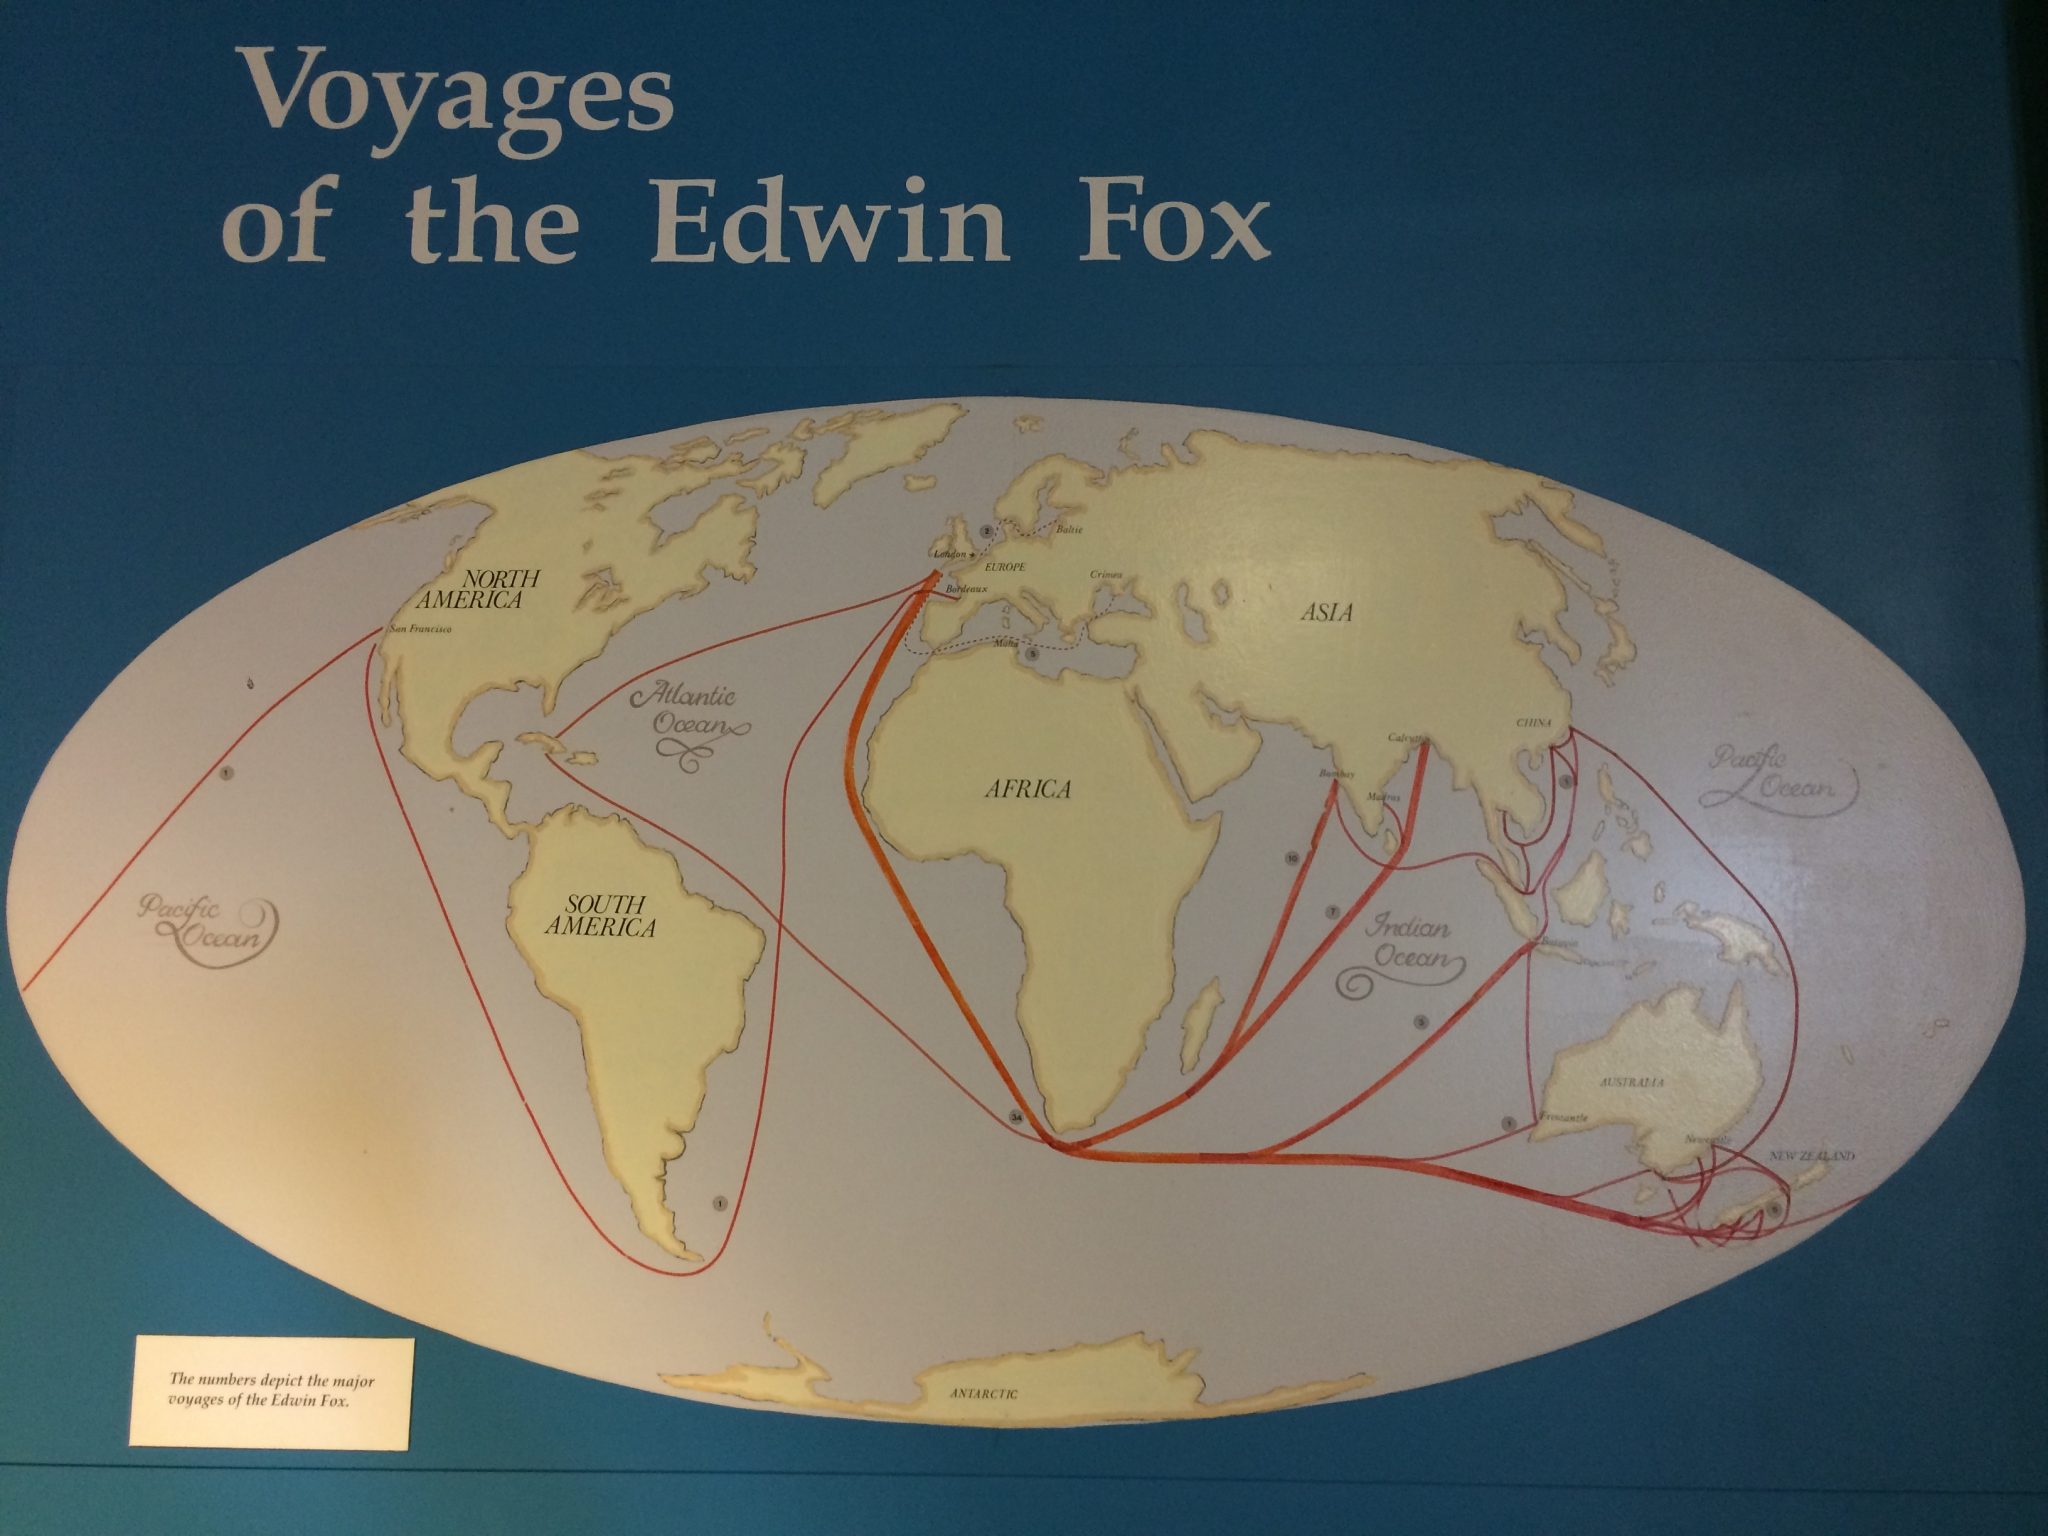 I viaggi della Edwin Fox